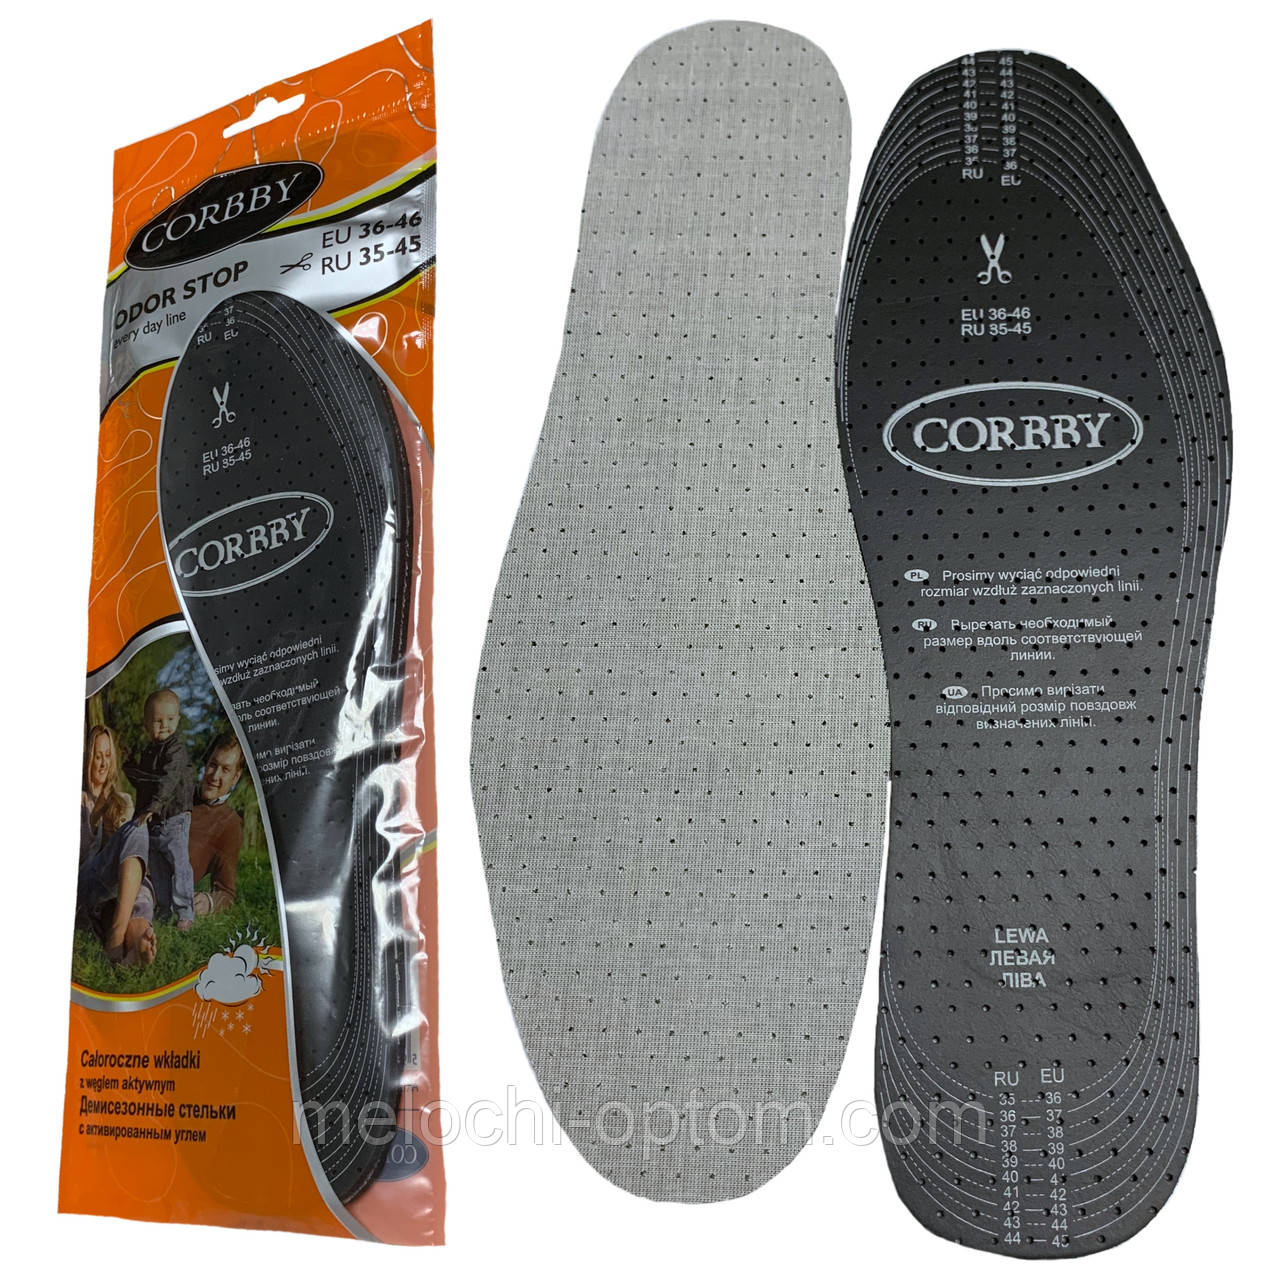 Устілки для взуття CORBBY odor stop мультиразмер (35-46)